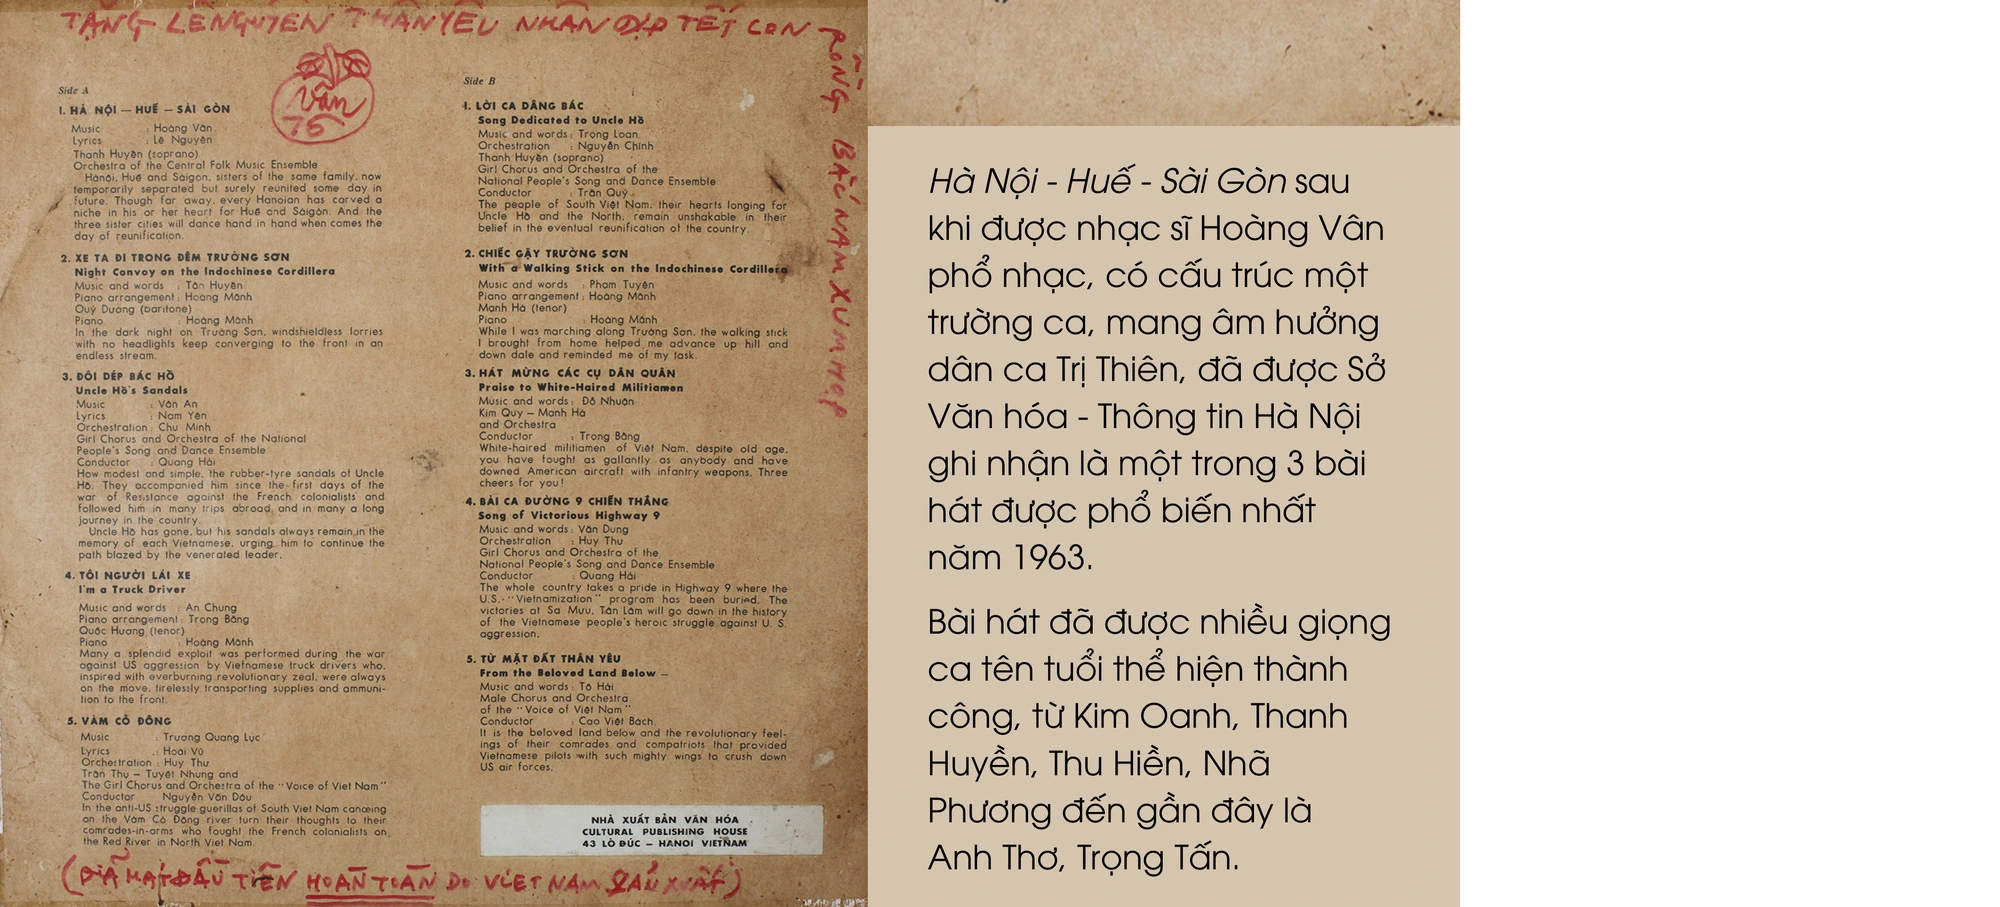 Nhà thơ Lê Nguyên, ảnh chụp tại Hà Nội năm 1955, trong kỳ nghỉ phép đầu tiên sau chiến dịch Điện Biên Phủ, sau đó ông quay lại Điện Biên Phủ để thu thập tư liệu cho bảo tàng Quân đội (Ảnh tư liệu gia đình)